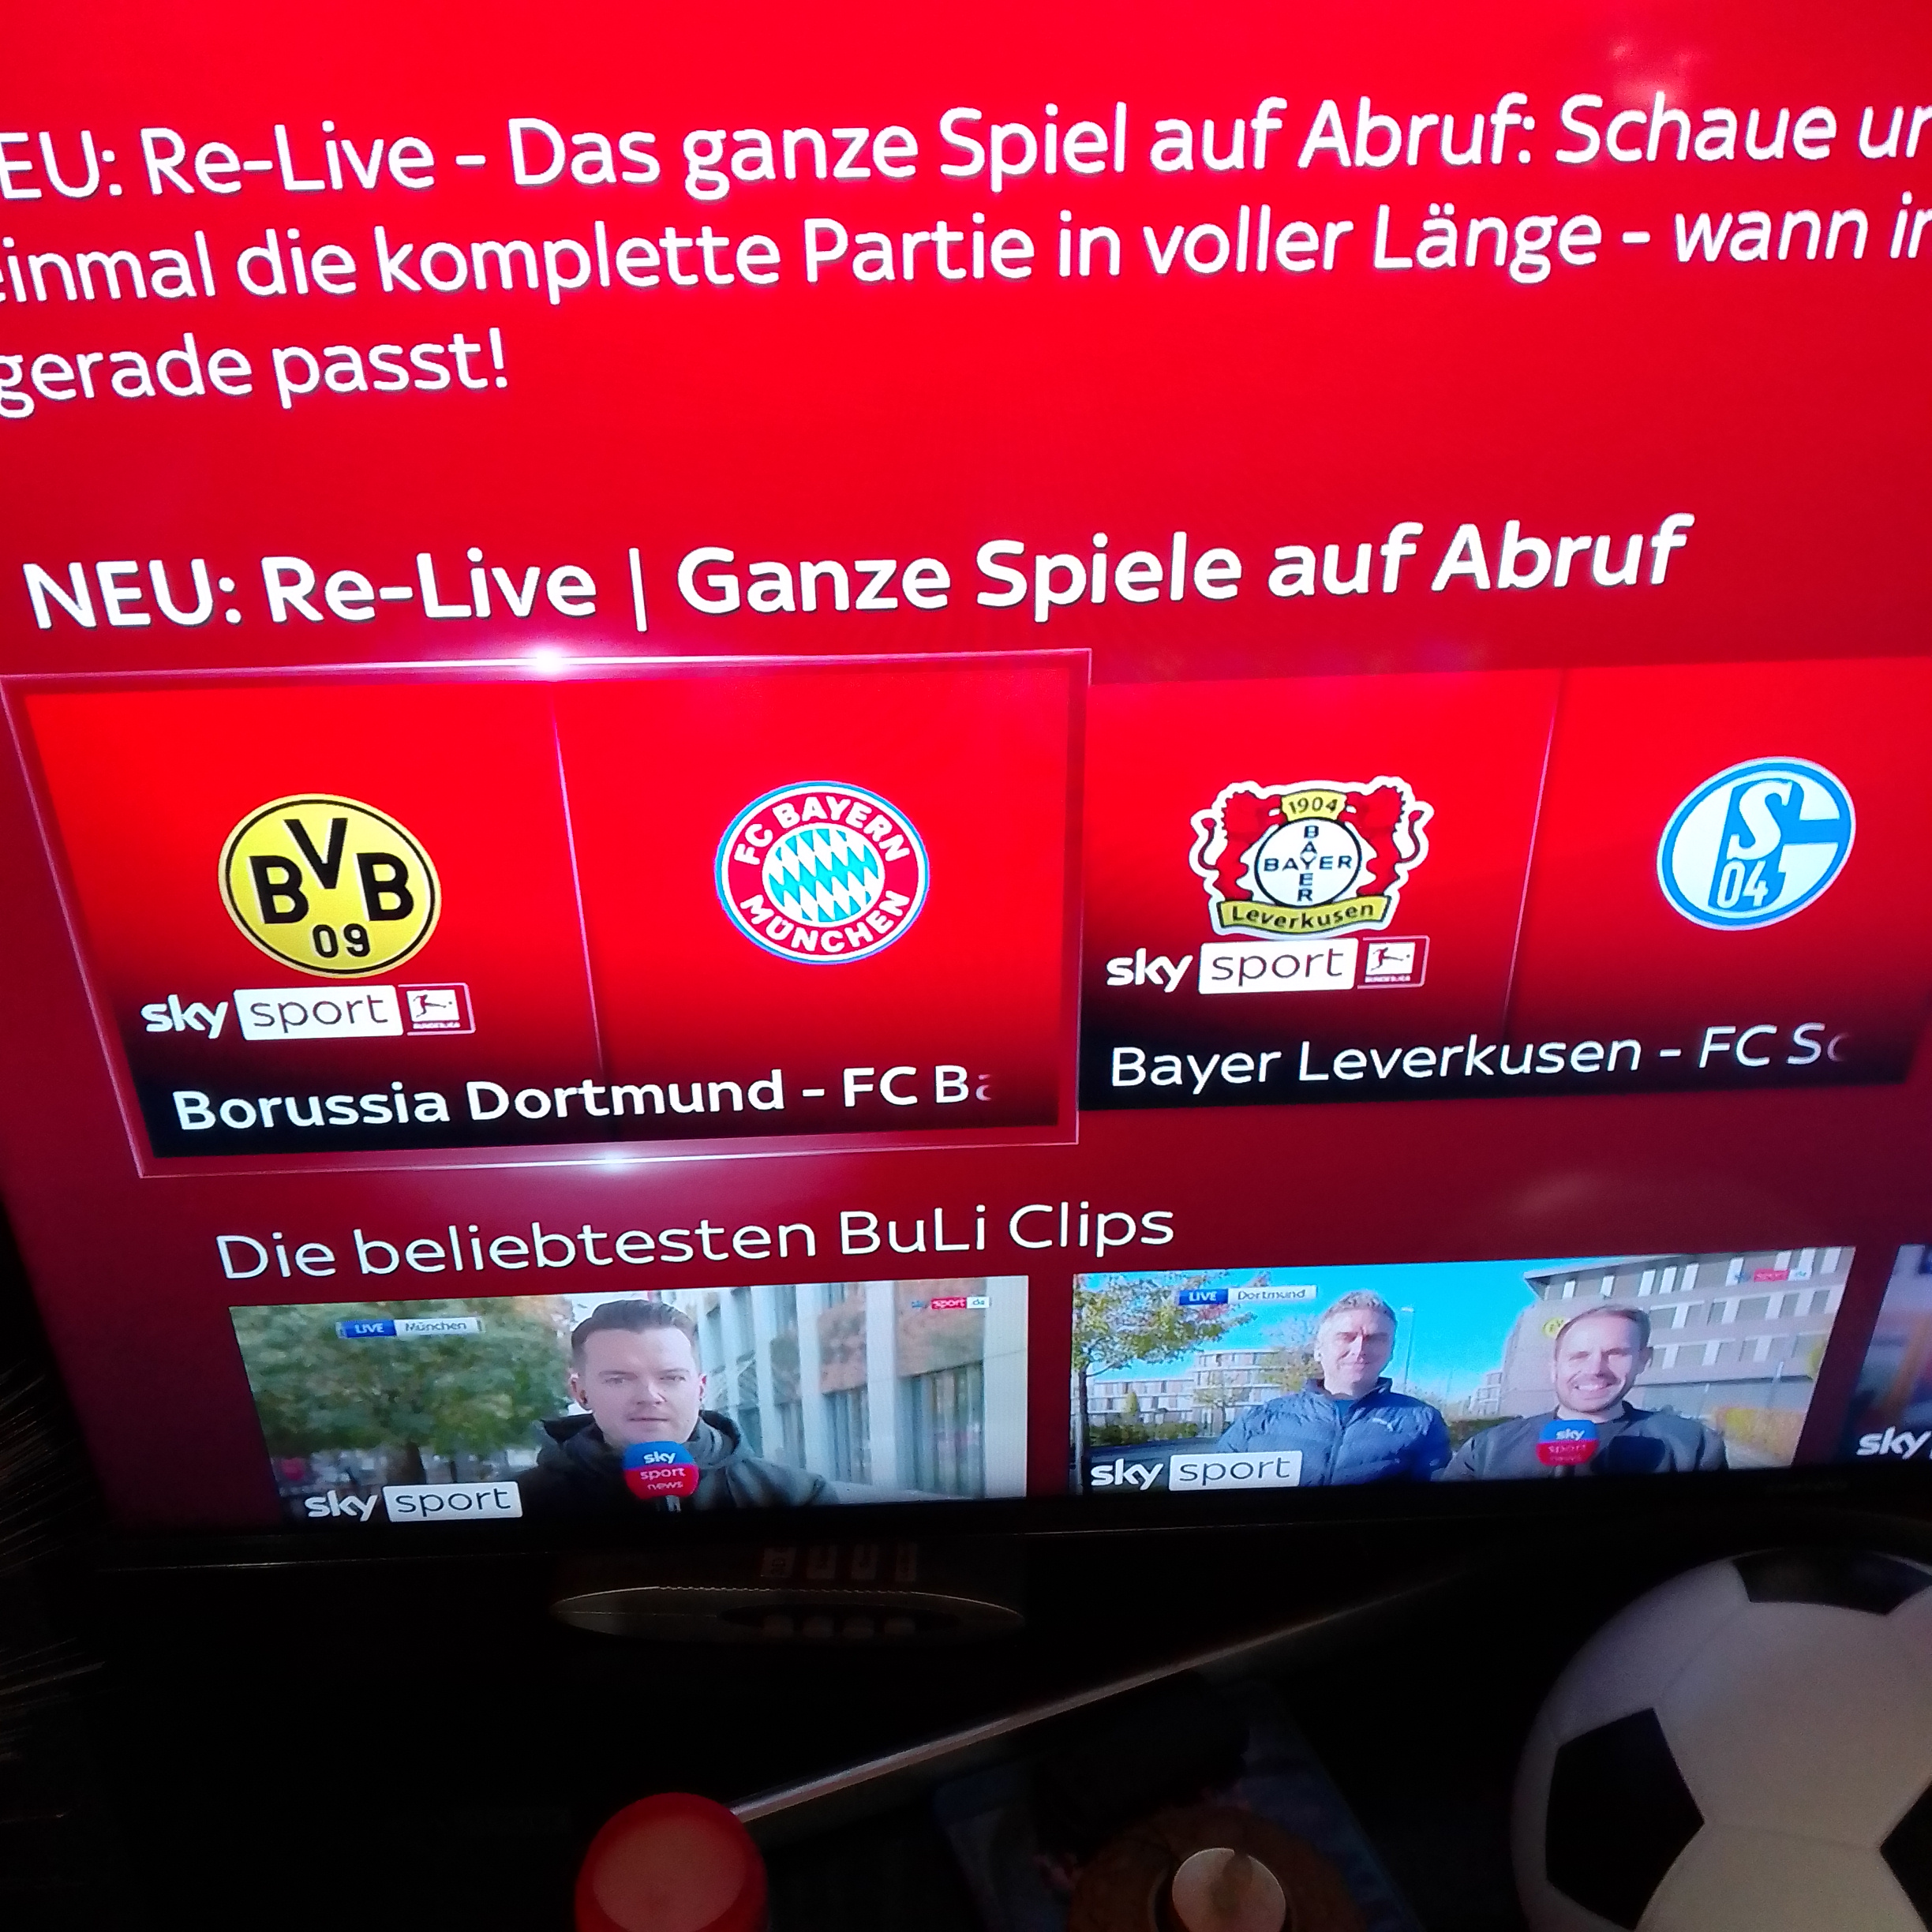 Bundesliga Re-Live nicht in Sky Go?